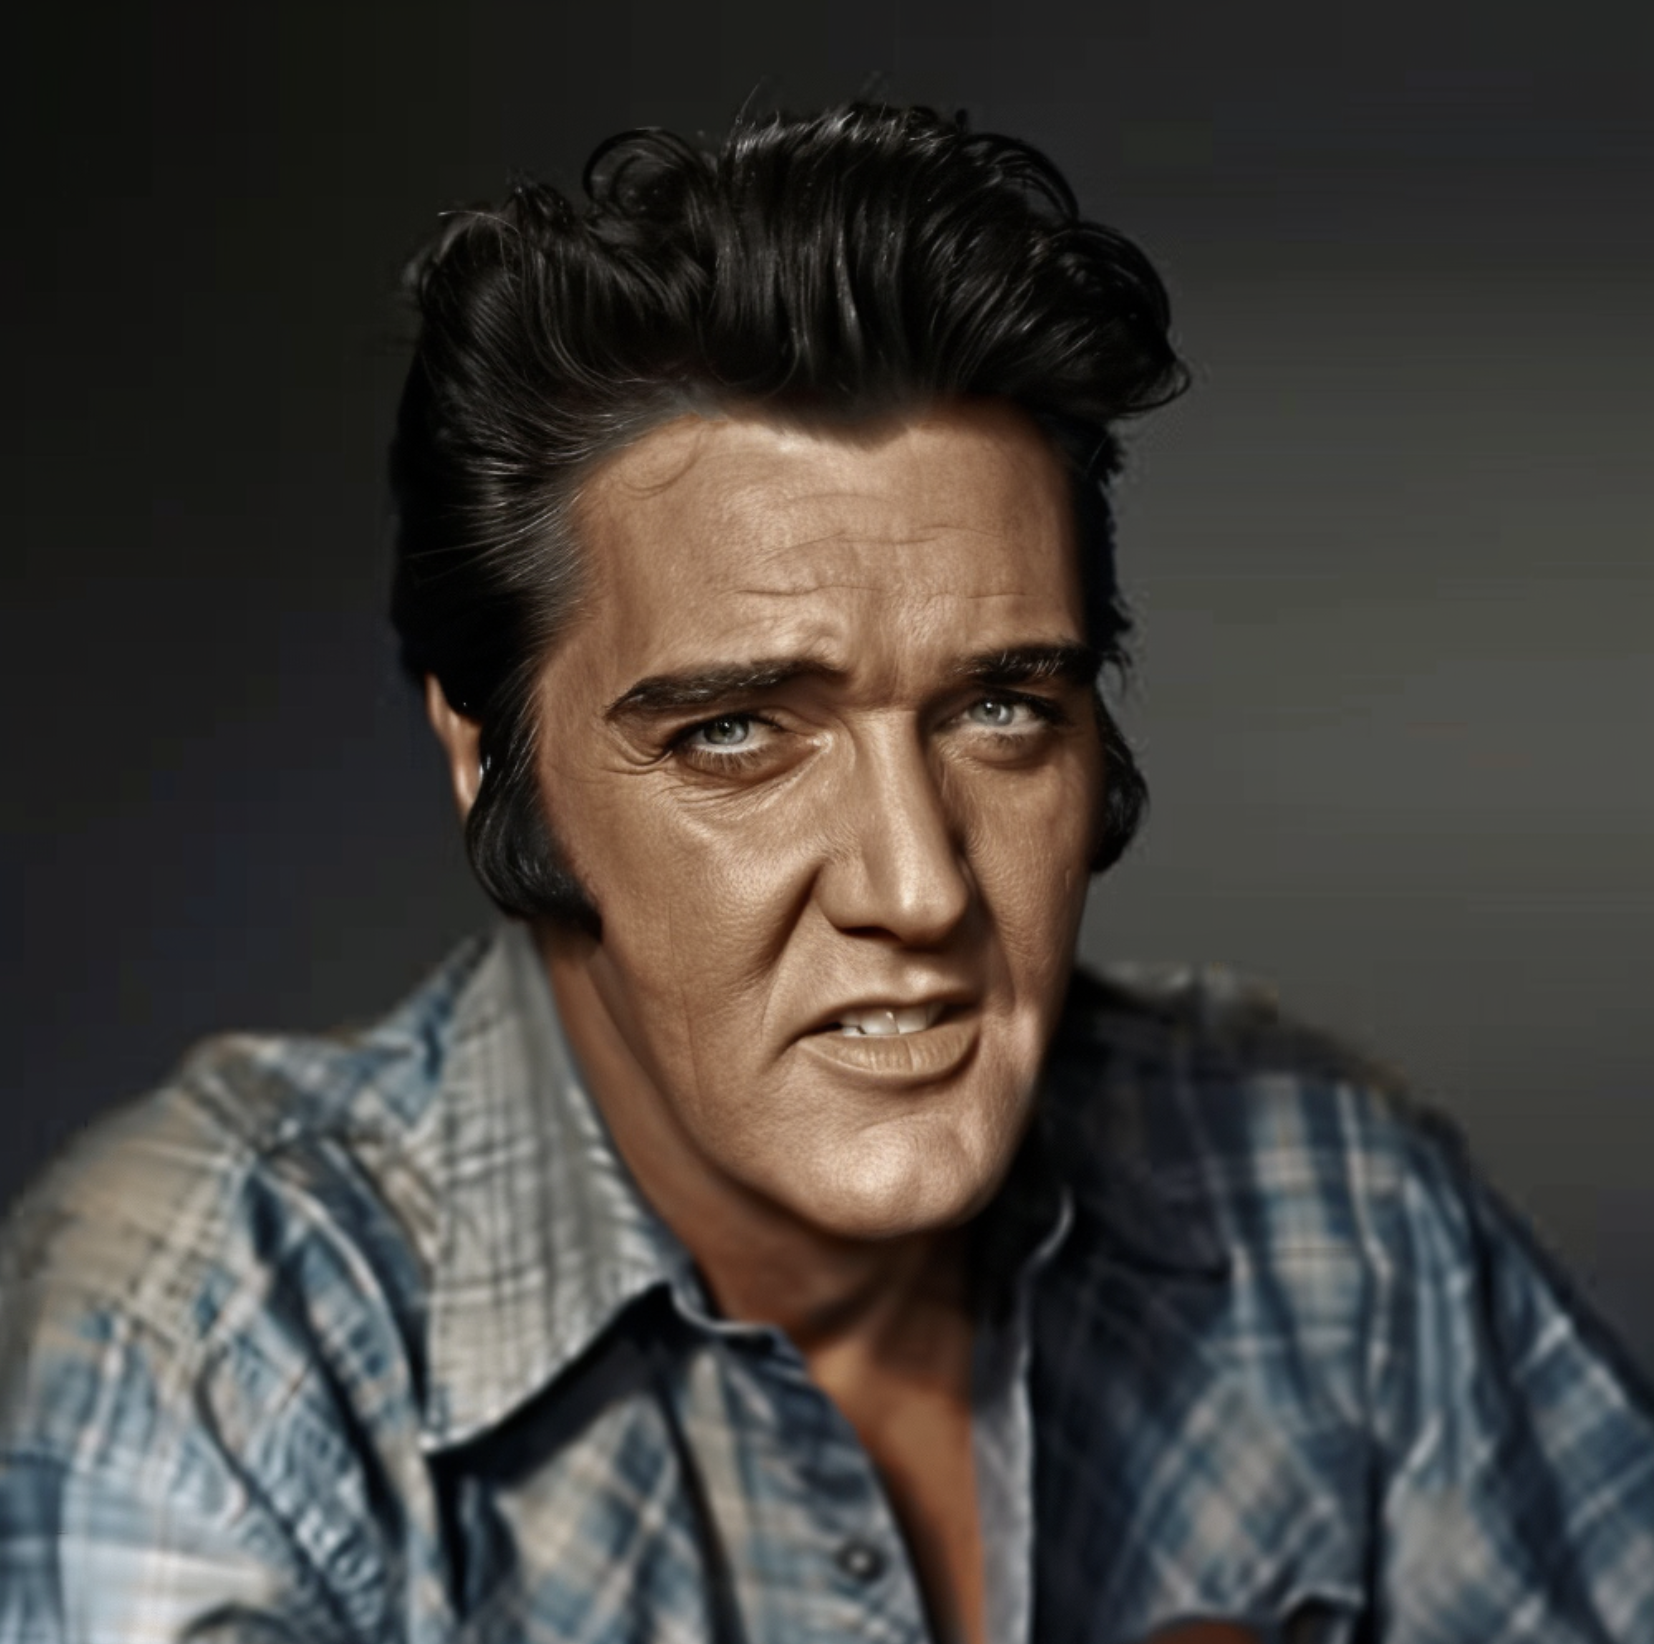 Image IA d'Elvis Presley dans sa vieillesse | Source : Midjourney